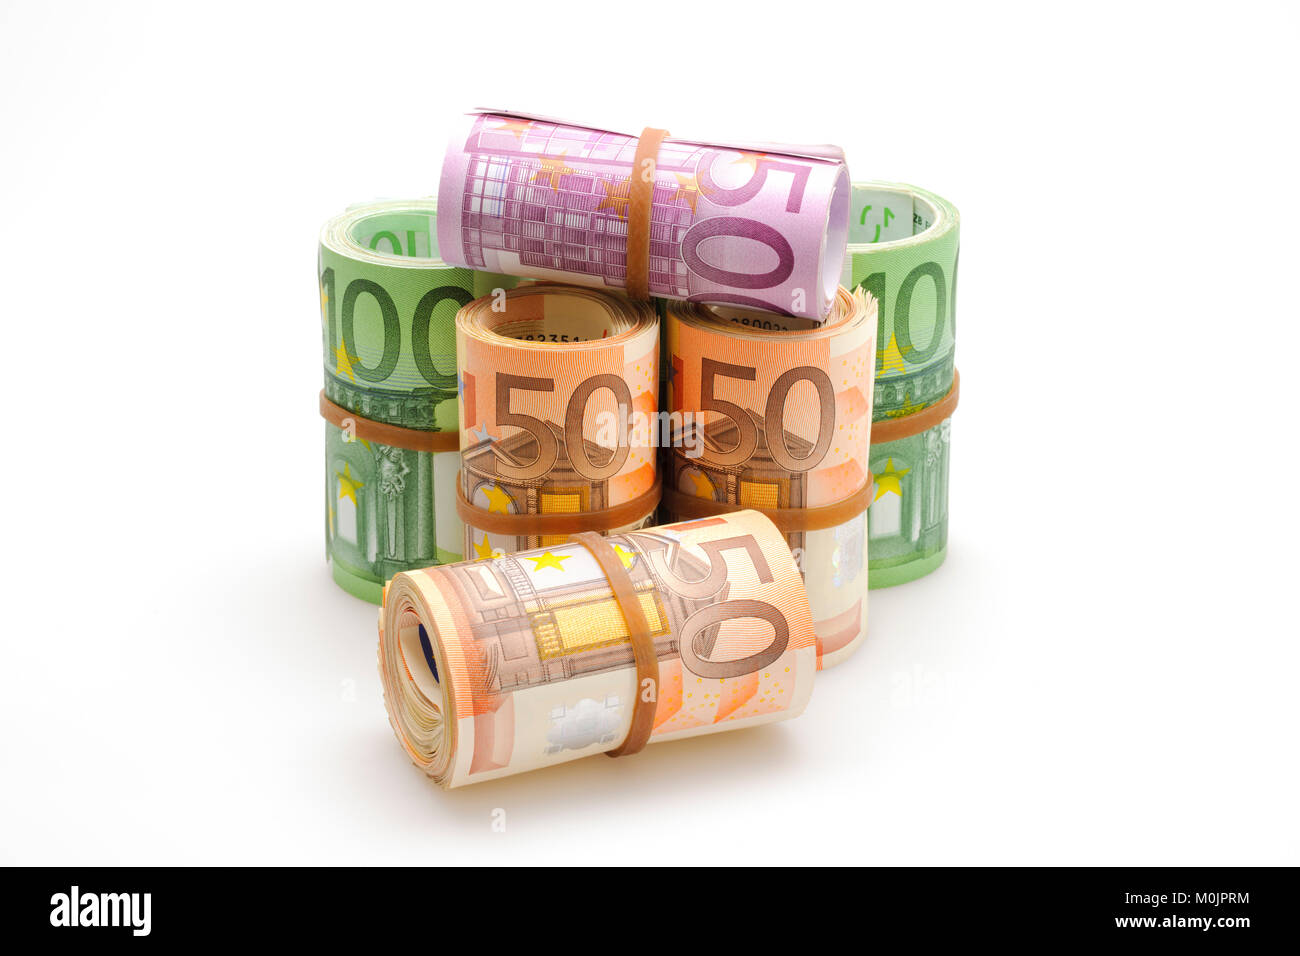 Verschiedene Euro-Banknoten in Rollen, 50 Euro, 100 Euro, 500 Euro  Stockfotografie - Alamy